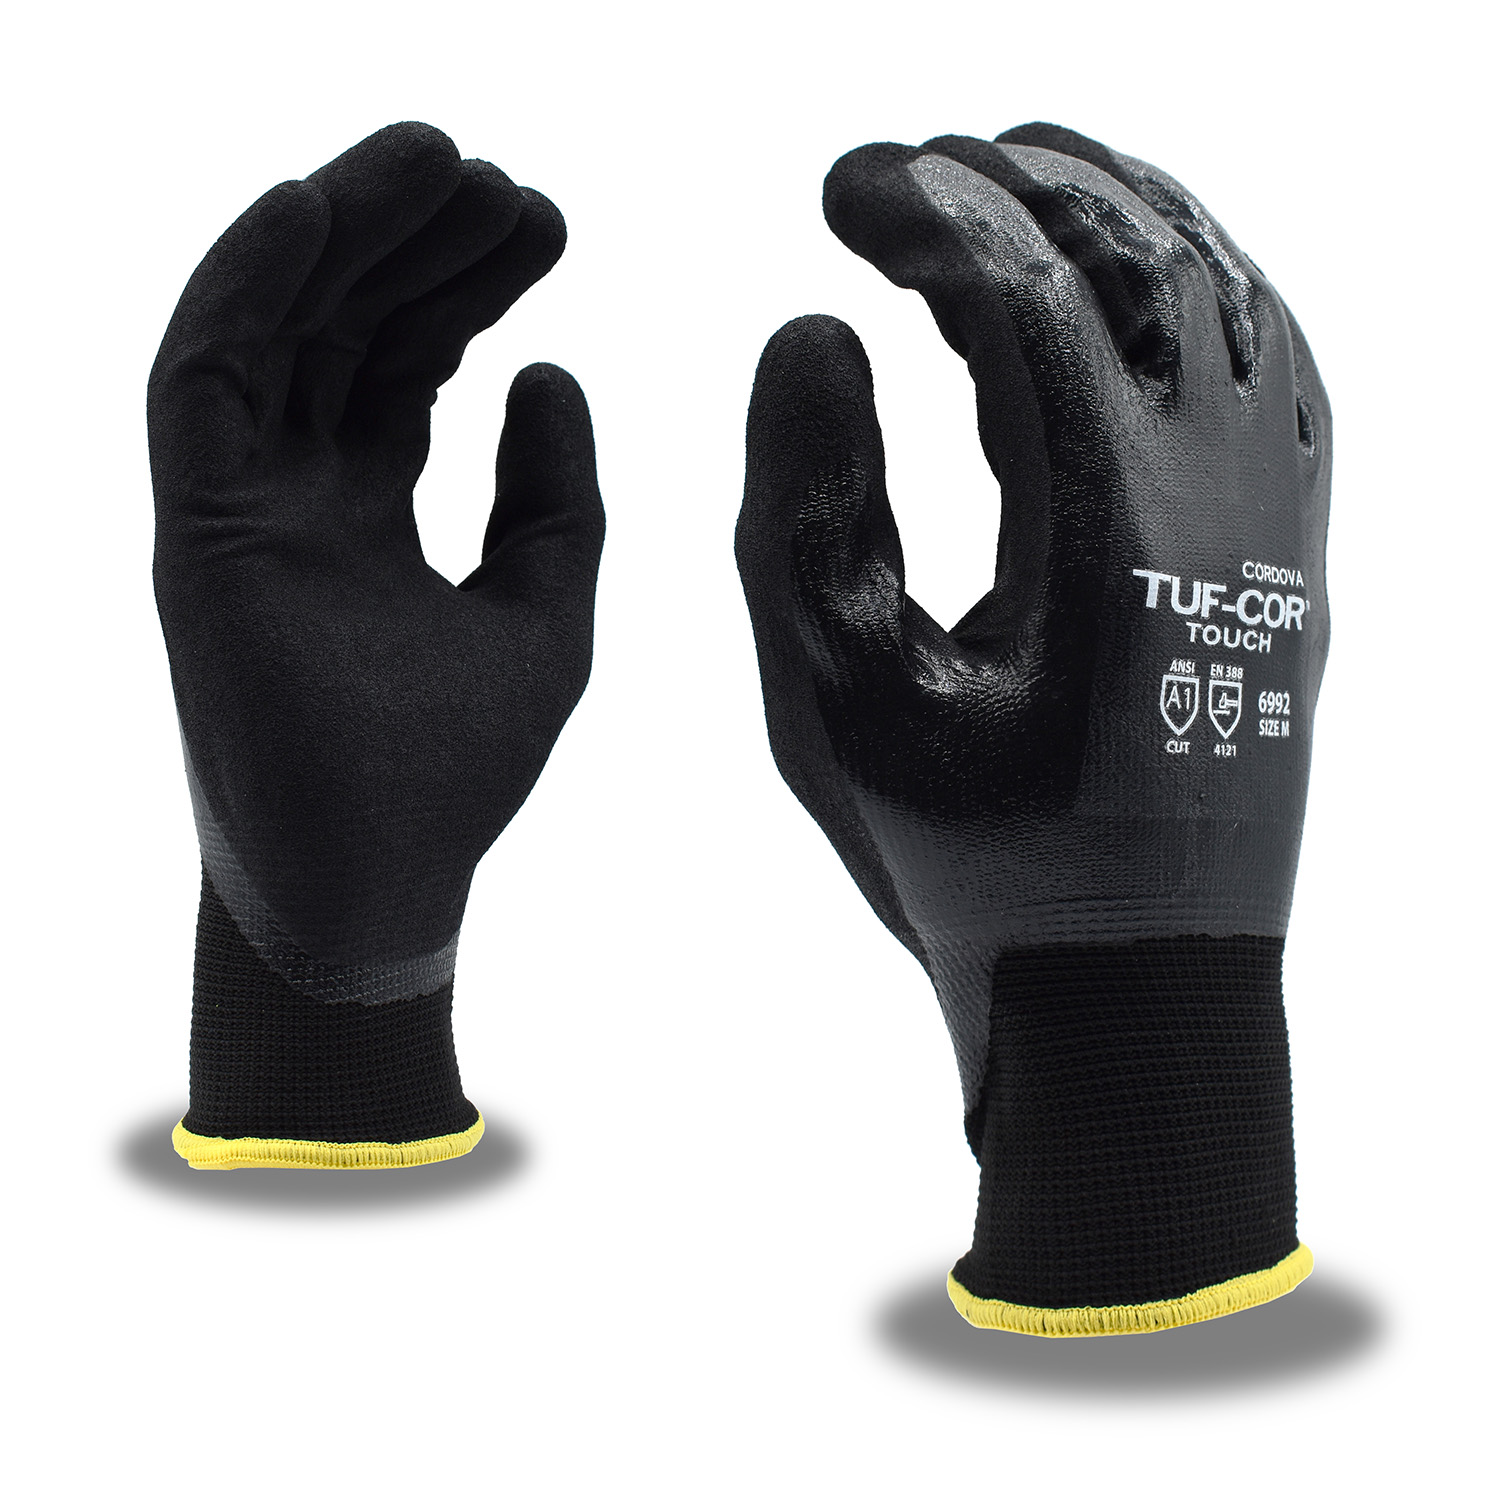 Cordova Tuf-Cor Touch™ Gloves - Gloves